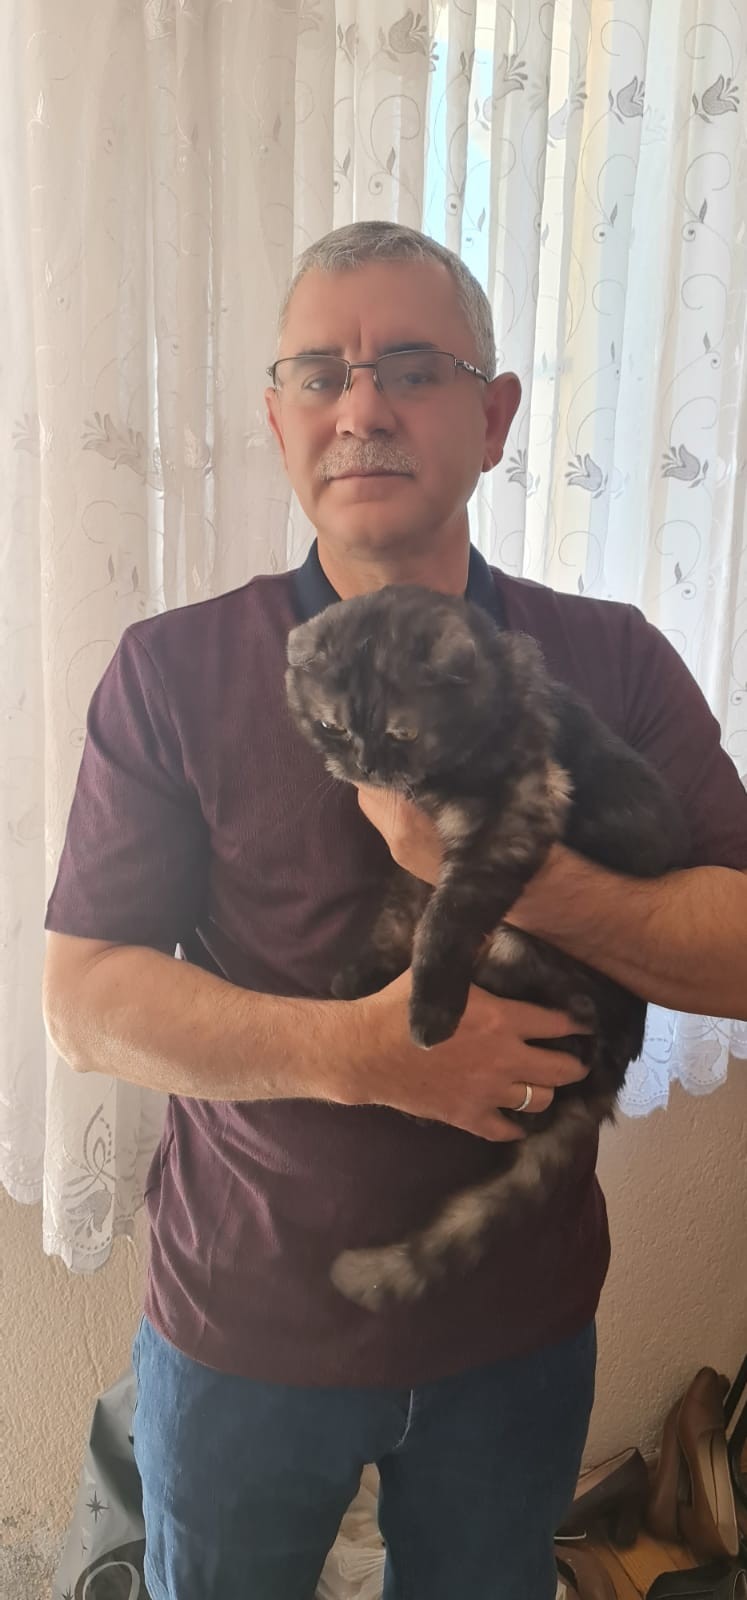 Denizli’nin Çameli ilçesinde başına 4 bin TL ödül konulan Beyhan Yaman’a ait , ‘Duman’ isimli British cinsi kedi, kaybolduktan 22 gün sonra bitkin halde bulundu.